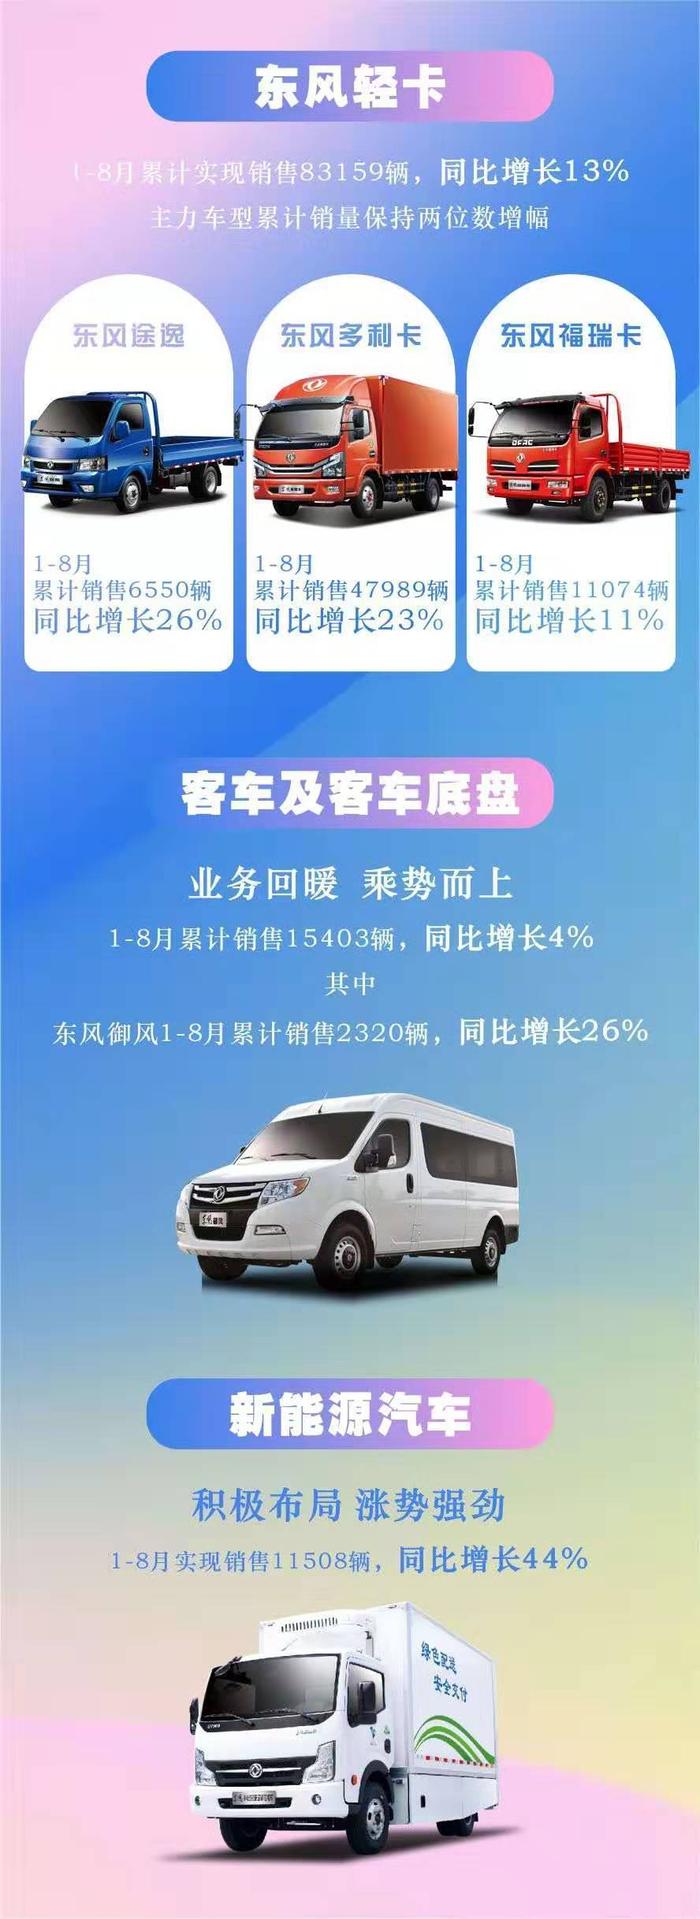 东风汽车股份1-8月汽车销量突破10万辆